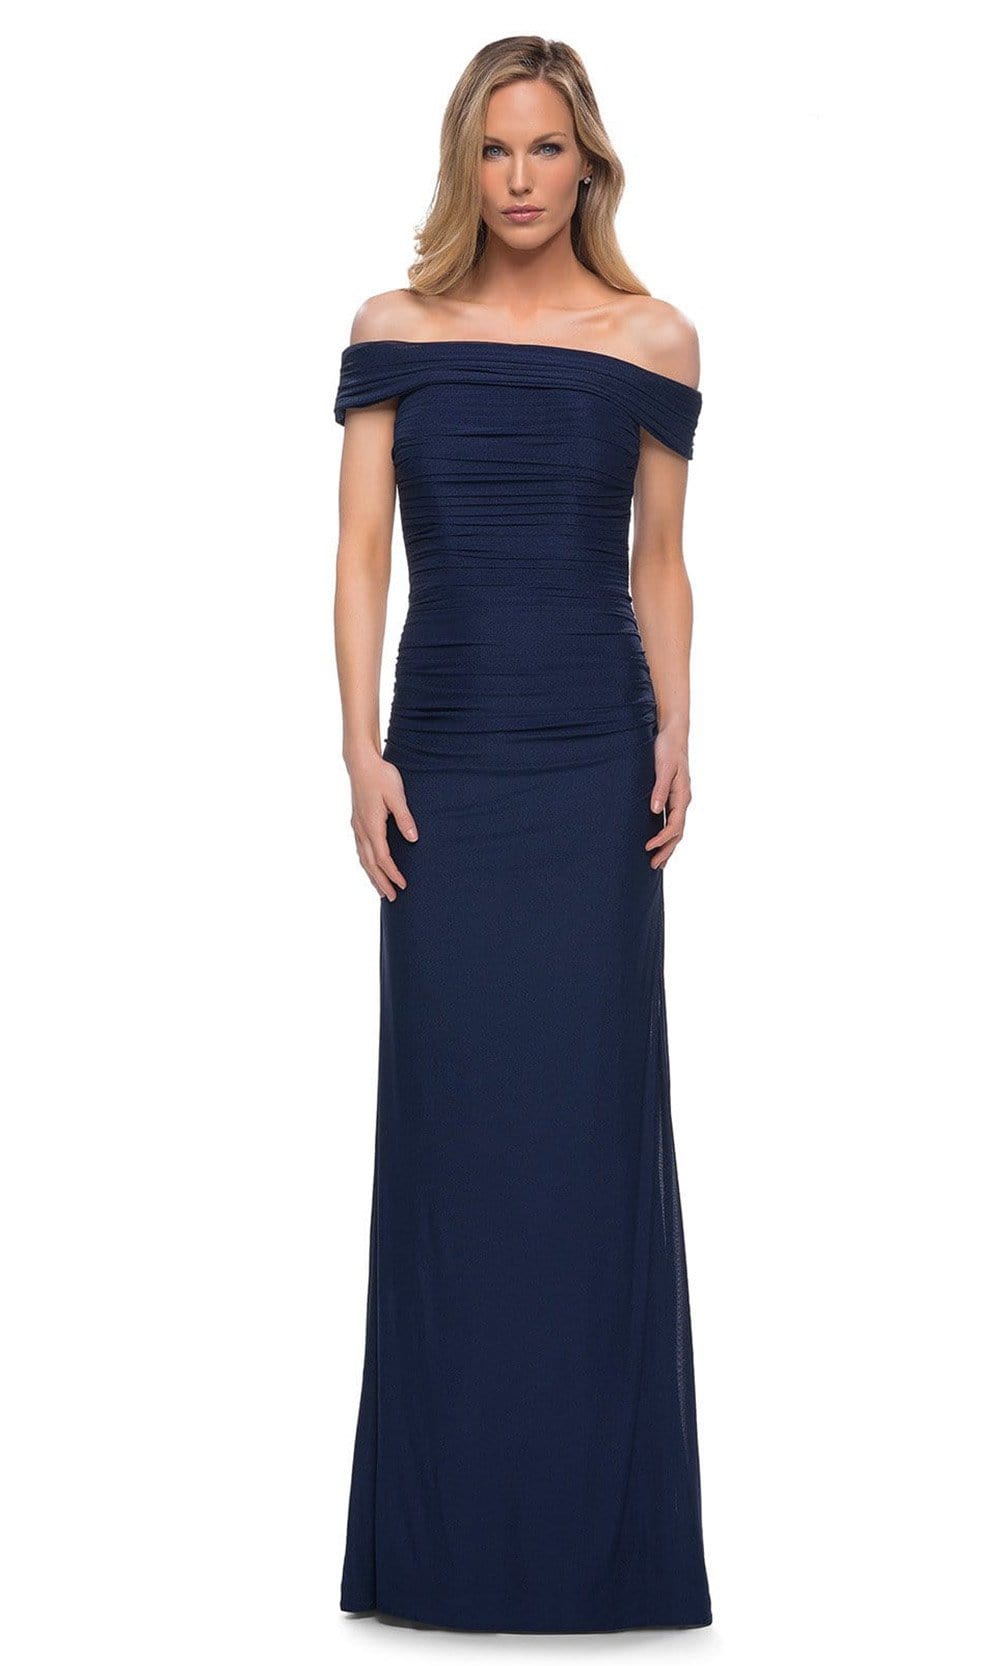 La Femme - 29541 Off Shoulder Column Evening Dress
